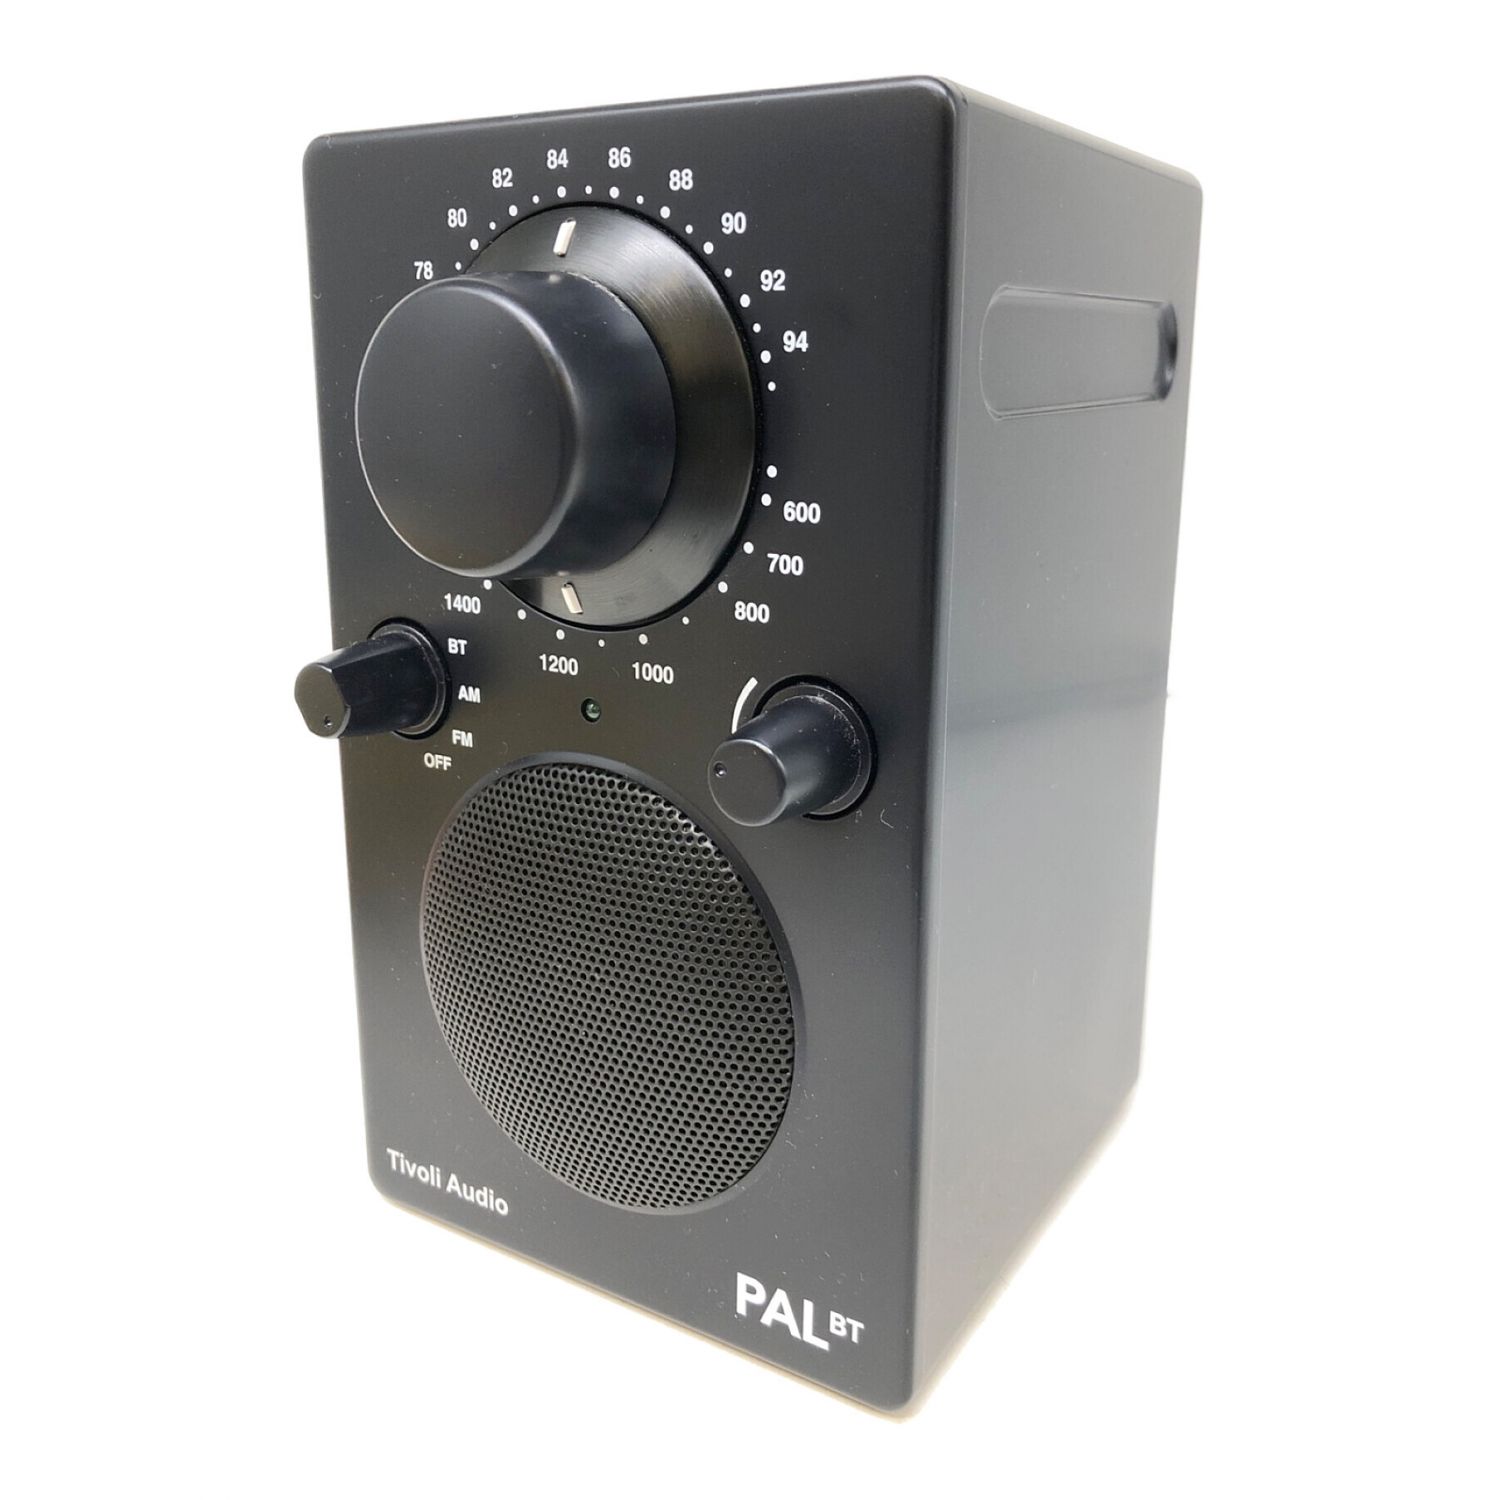 憧れのチボリオーディオ Tivoli Audio PAL BT ラジオ - オーディオ機器